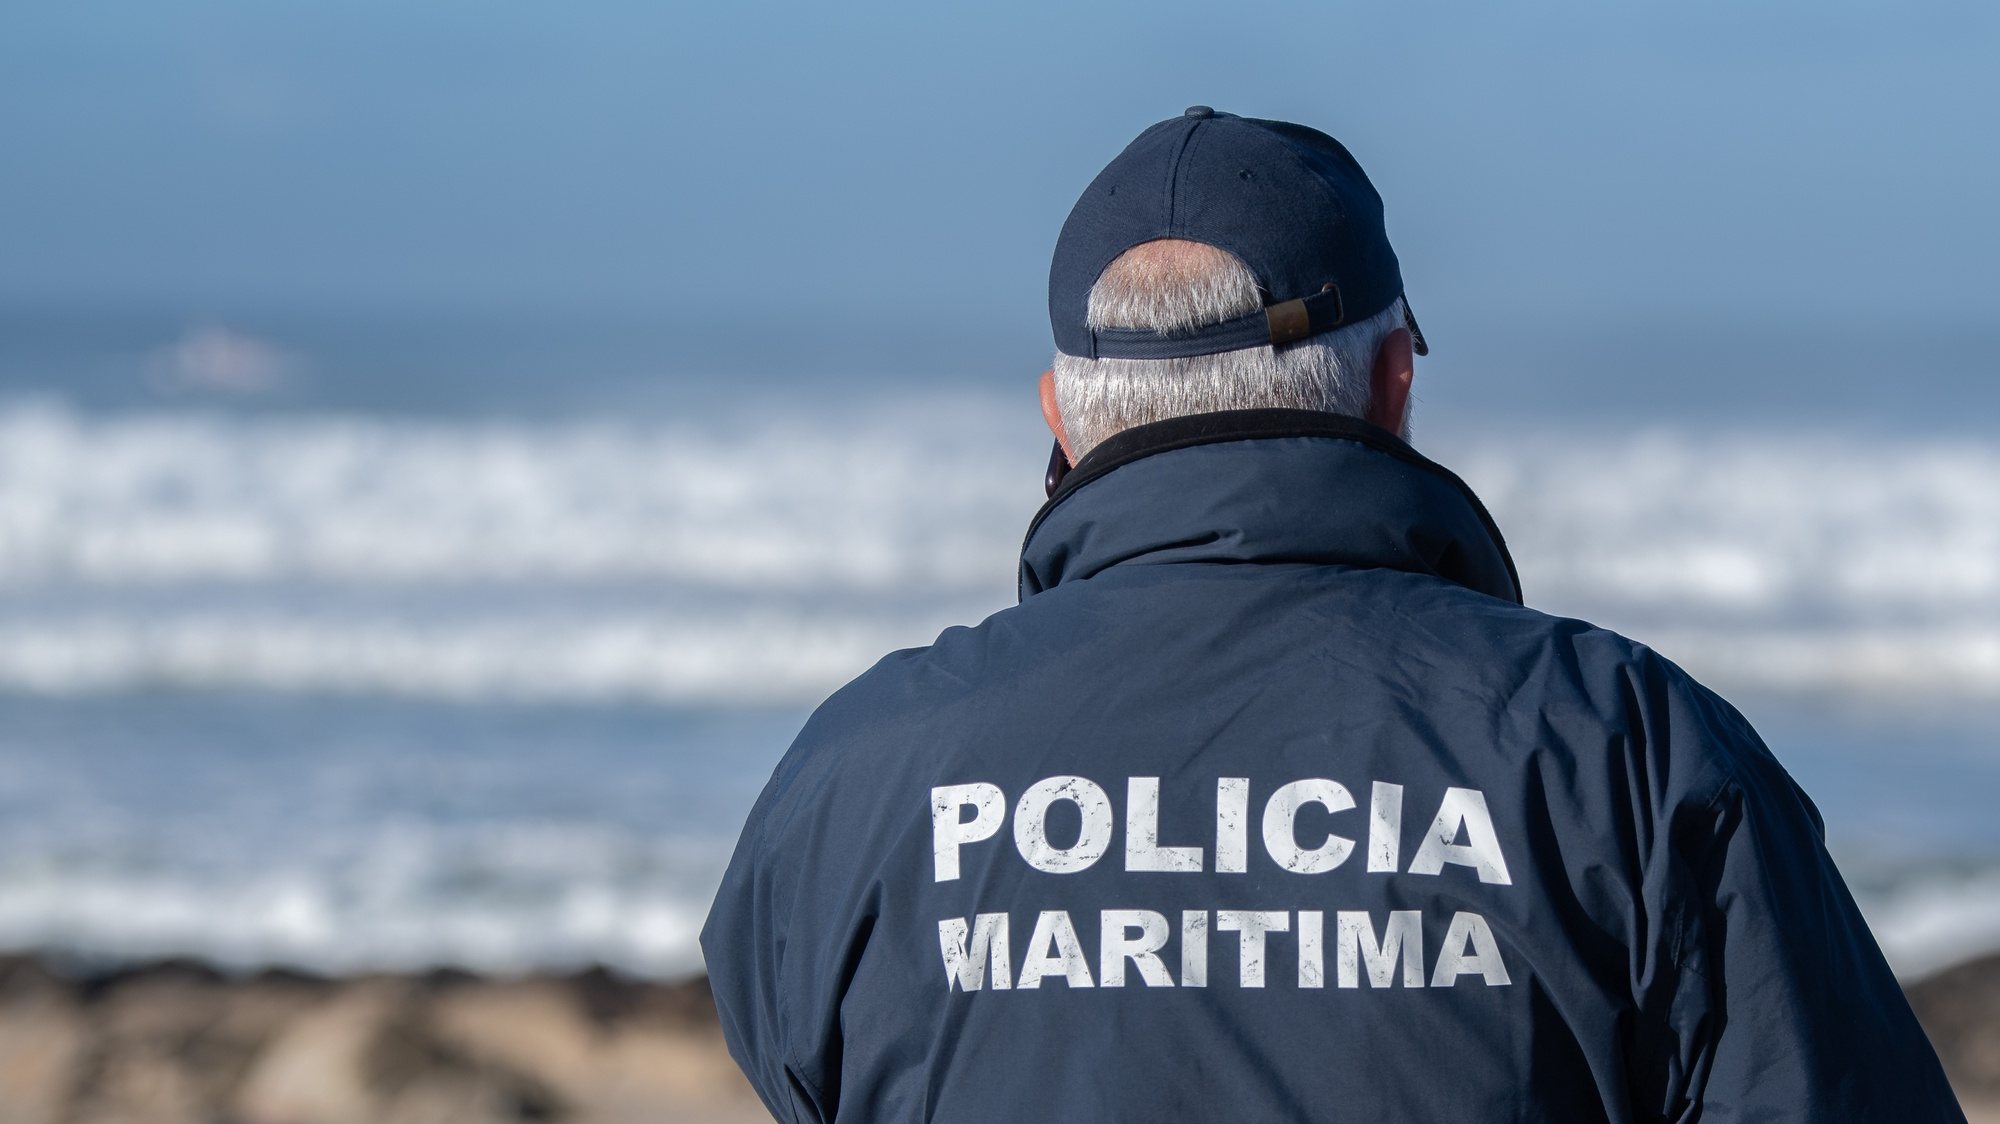 Polícia Marítima aguarda por autorização para poder utilizar as bodycams